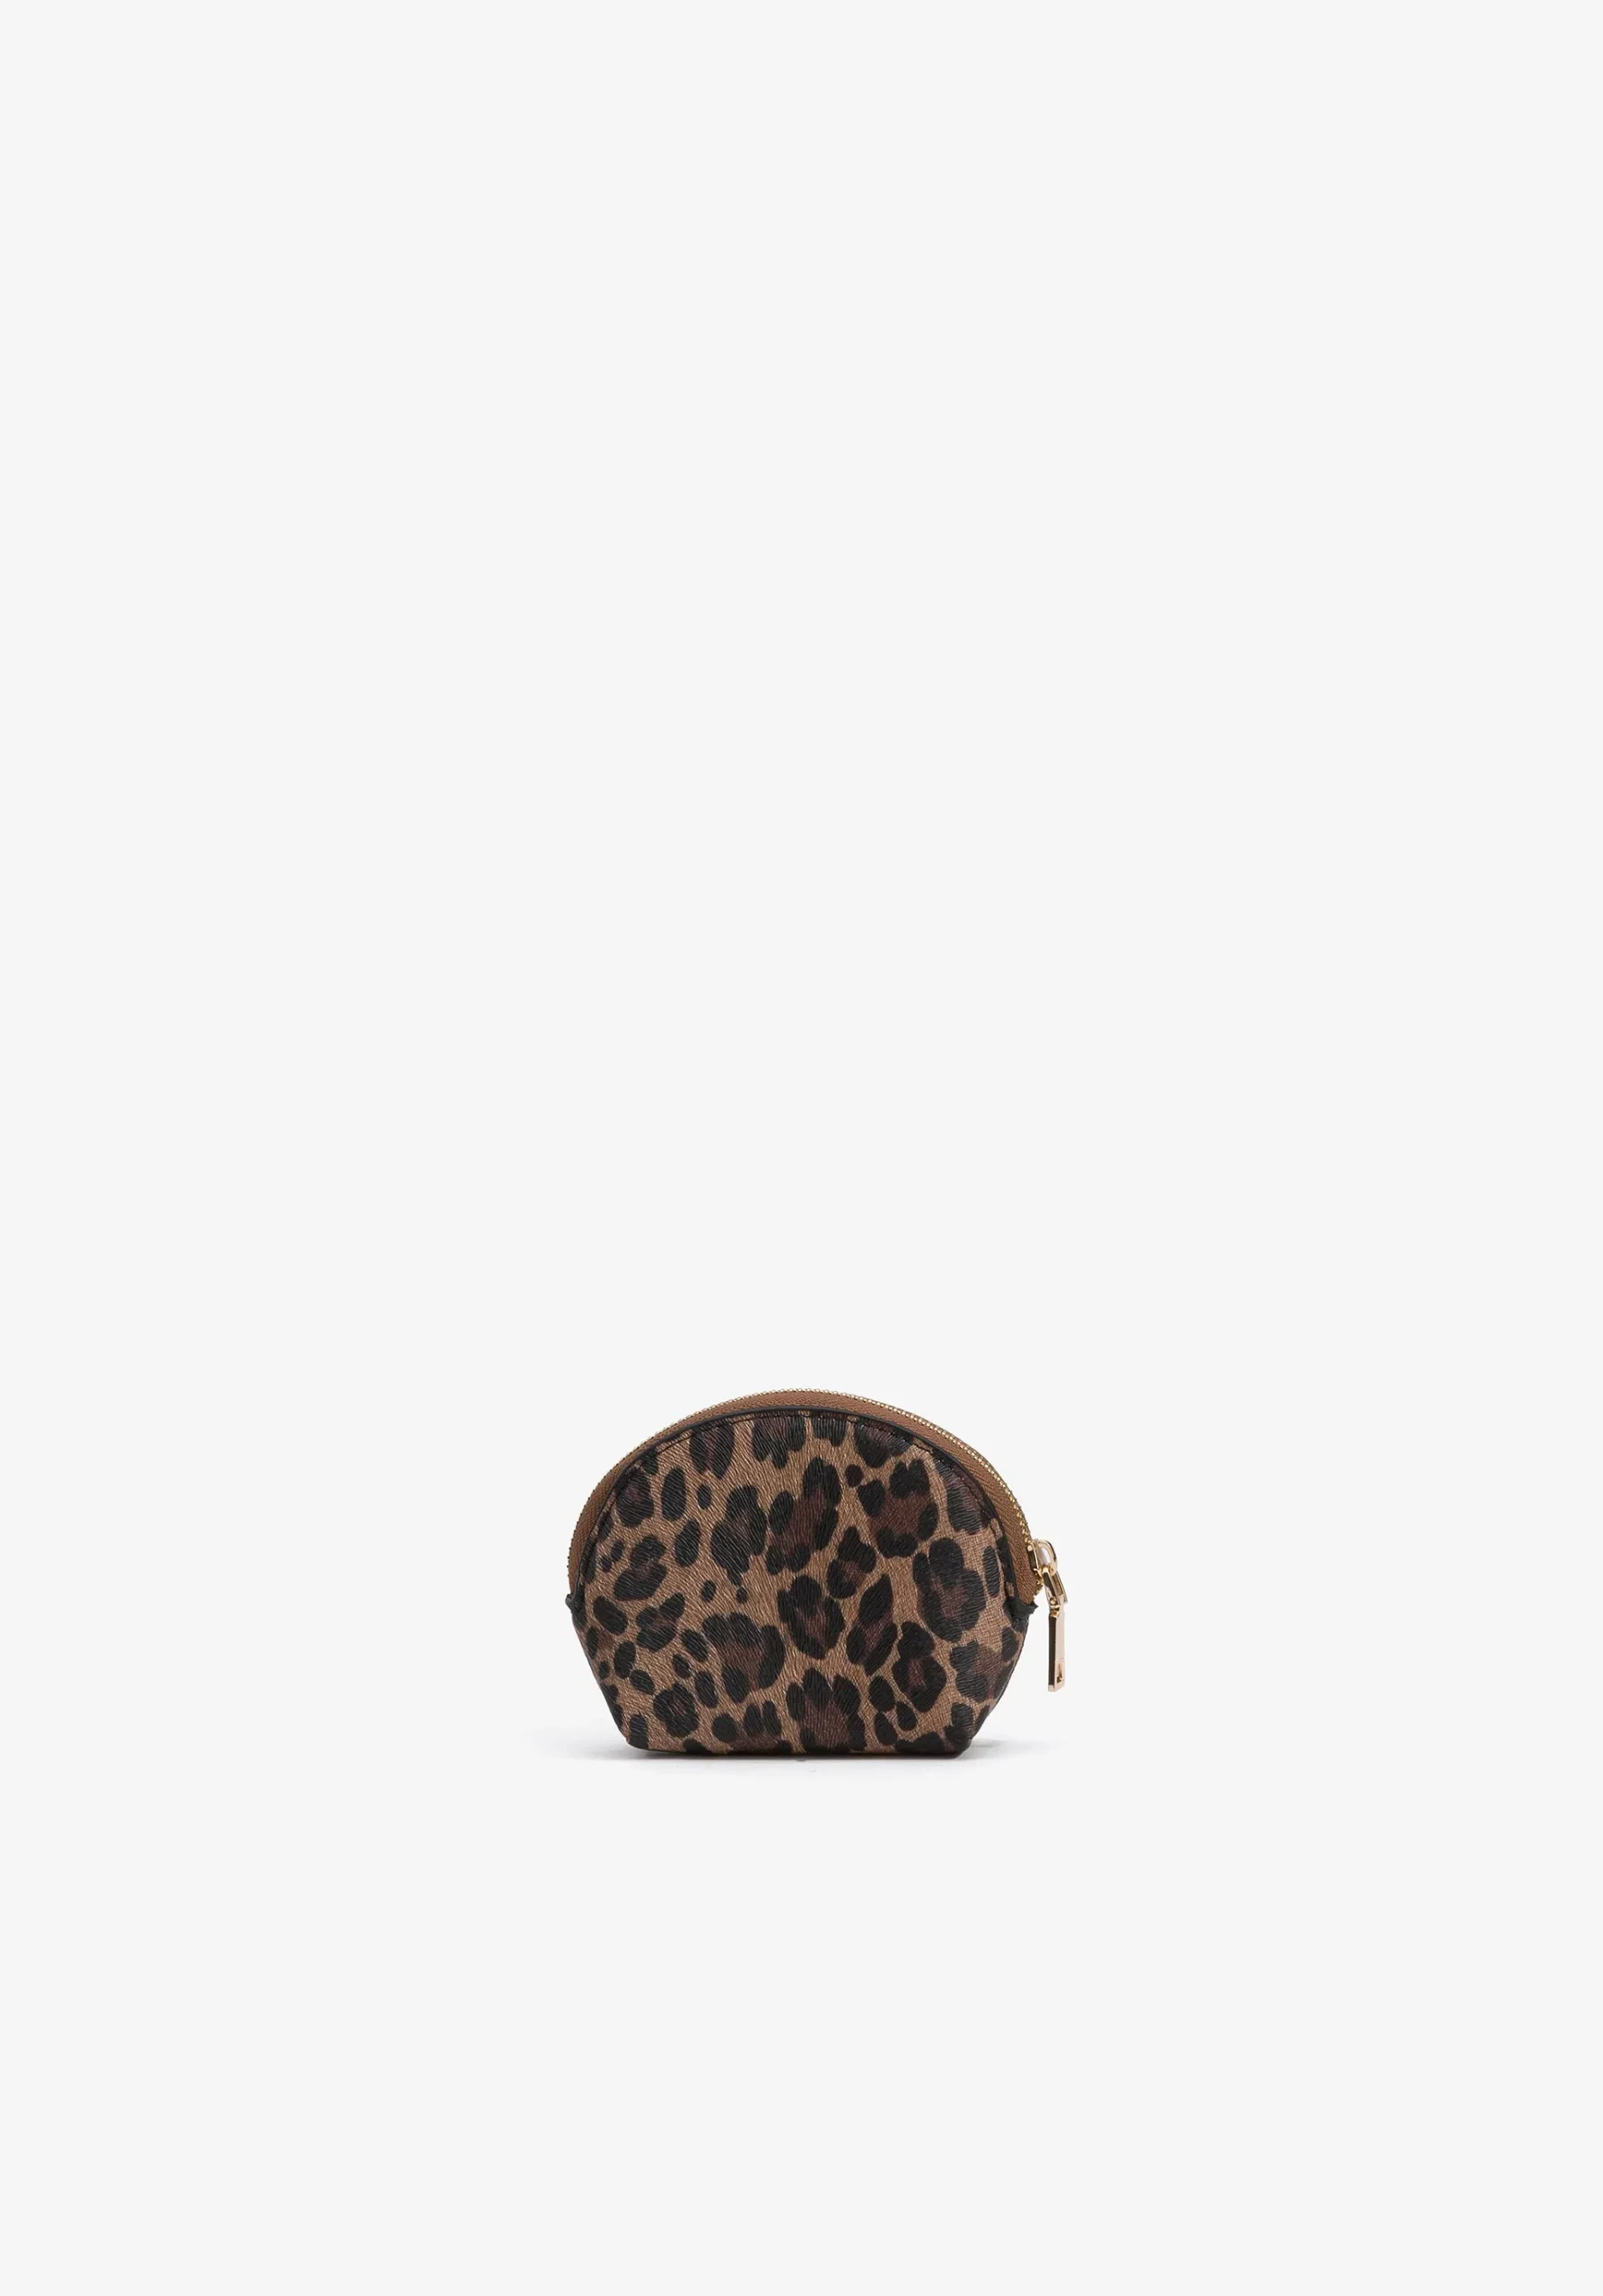 Monedero pequeño en cabado animal print color marrón. Modelo 71006792 de Vilanova.